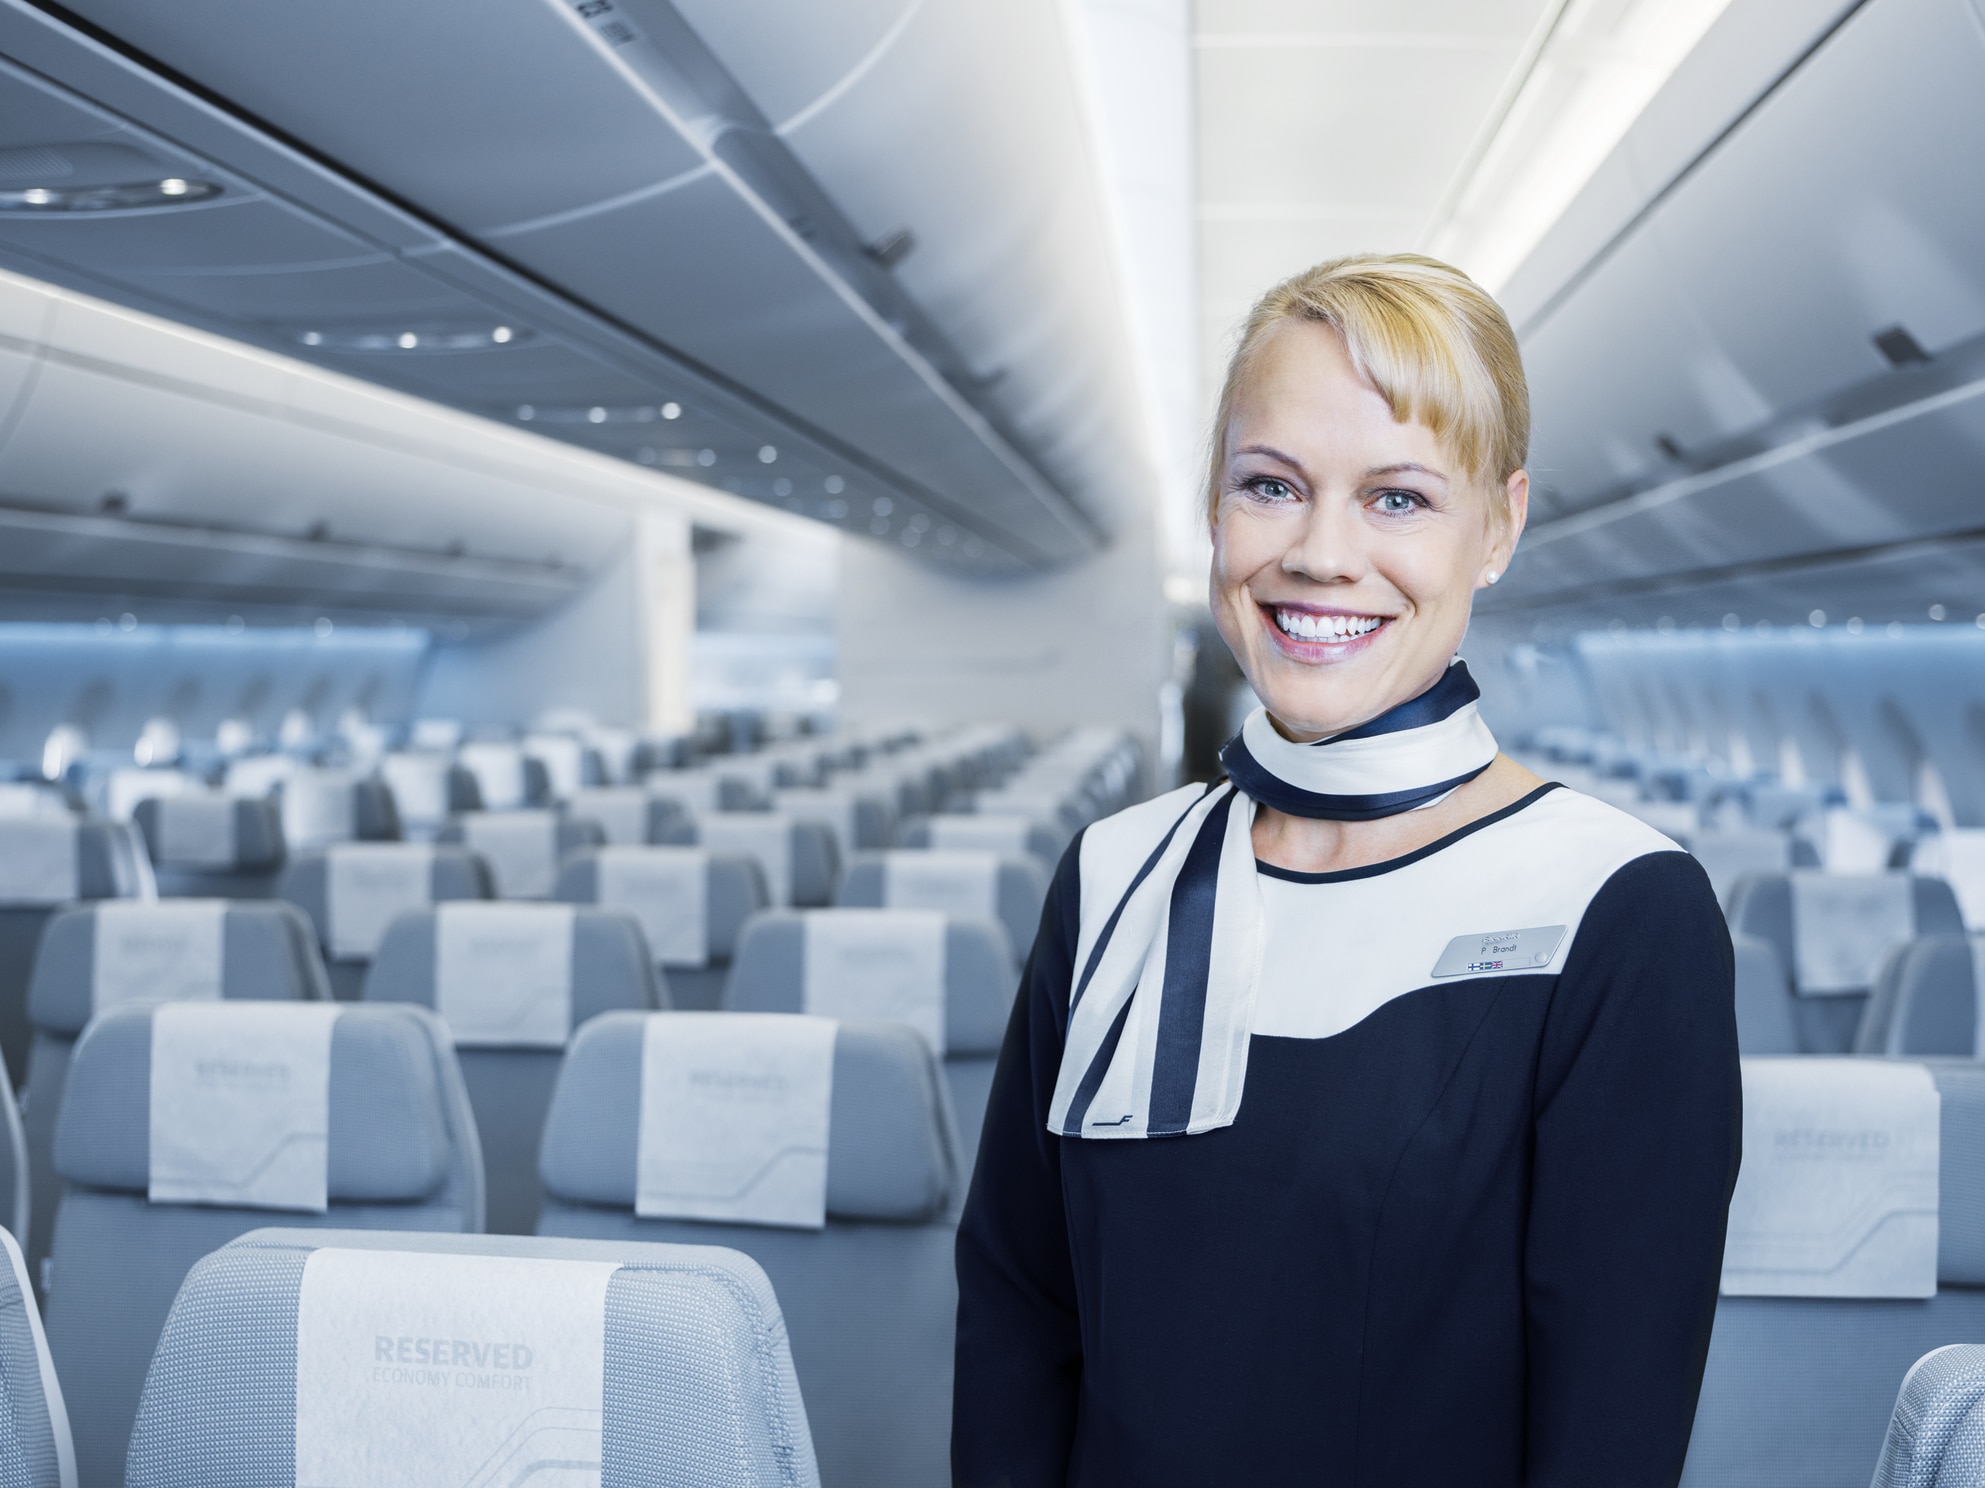 Η Finnair συμφωνεί εξοικονόμηση πόρων με το πλήρωμα καμπίνας, δεν θα αυξήσει τις υπεργολαβίες στις υπηρεσίες εν πτήσει